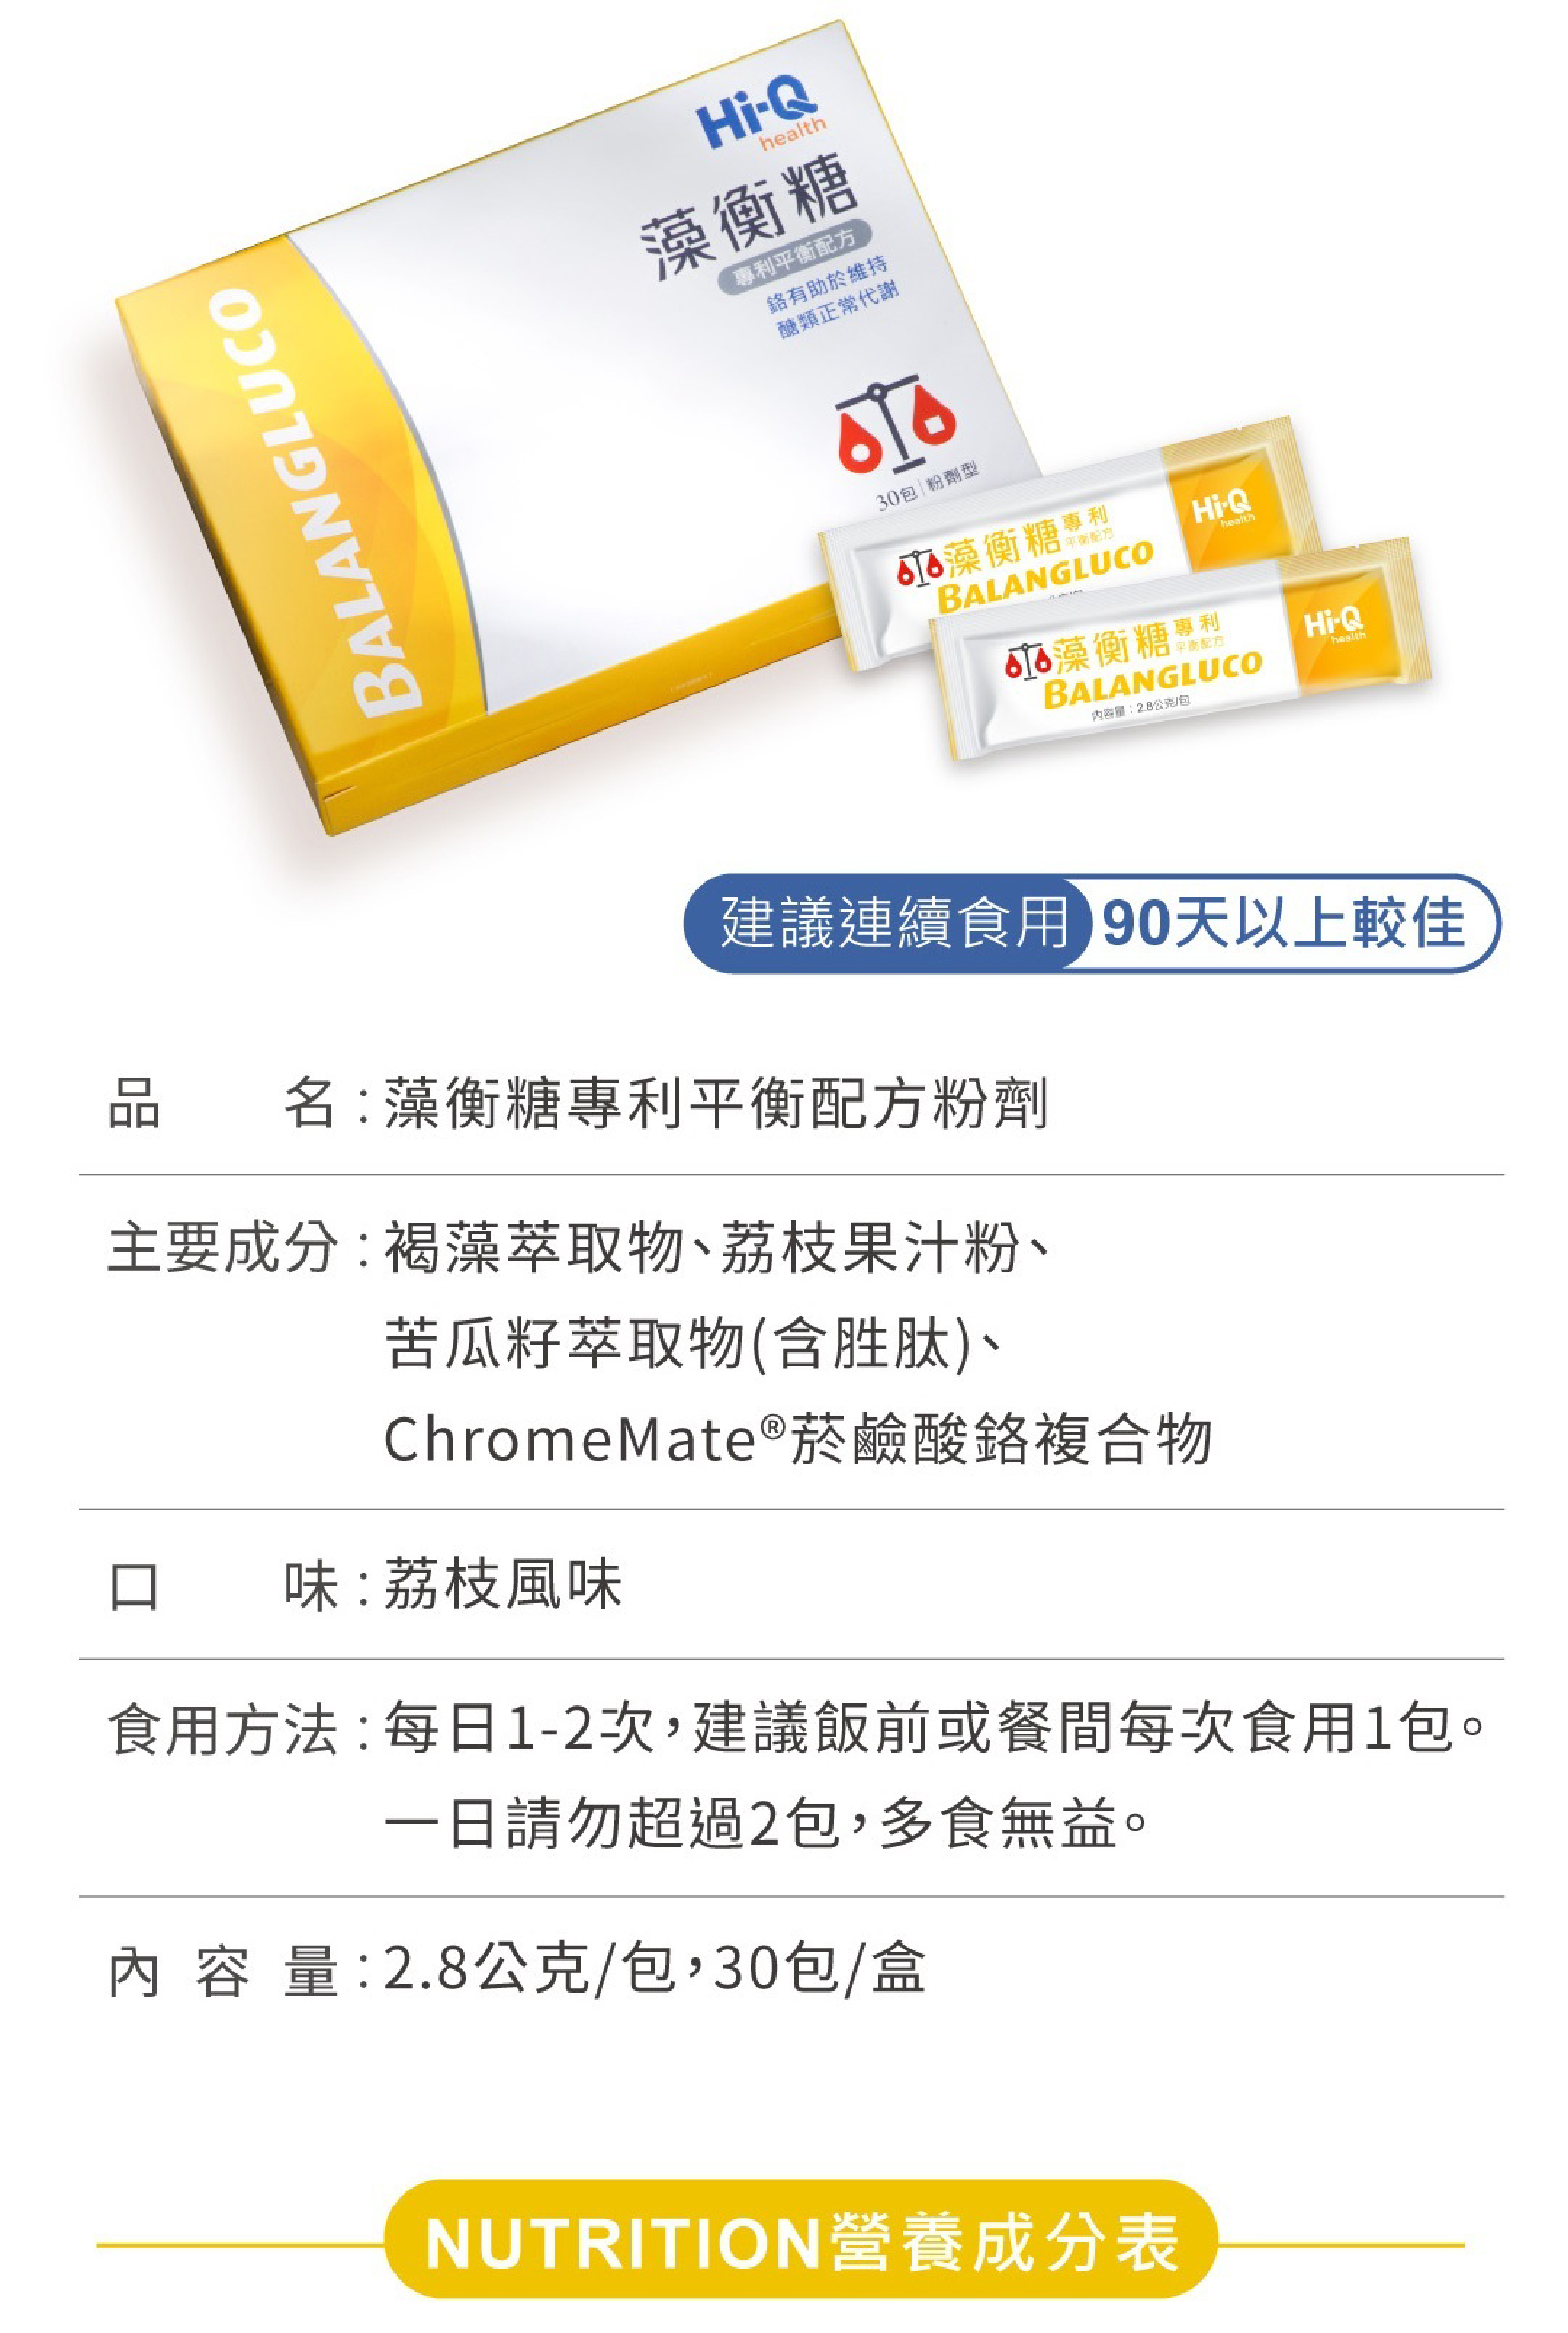 【Hi-Q】藻衡糖 專利平衡配方粉劑 新包裝